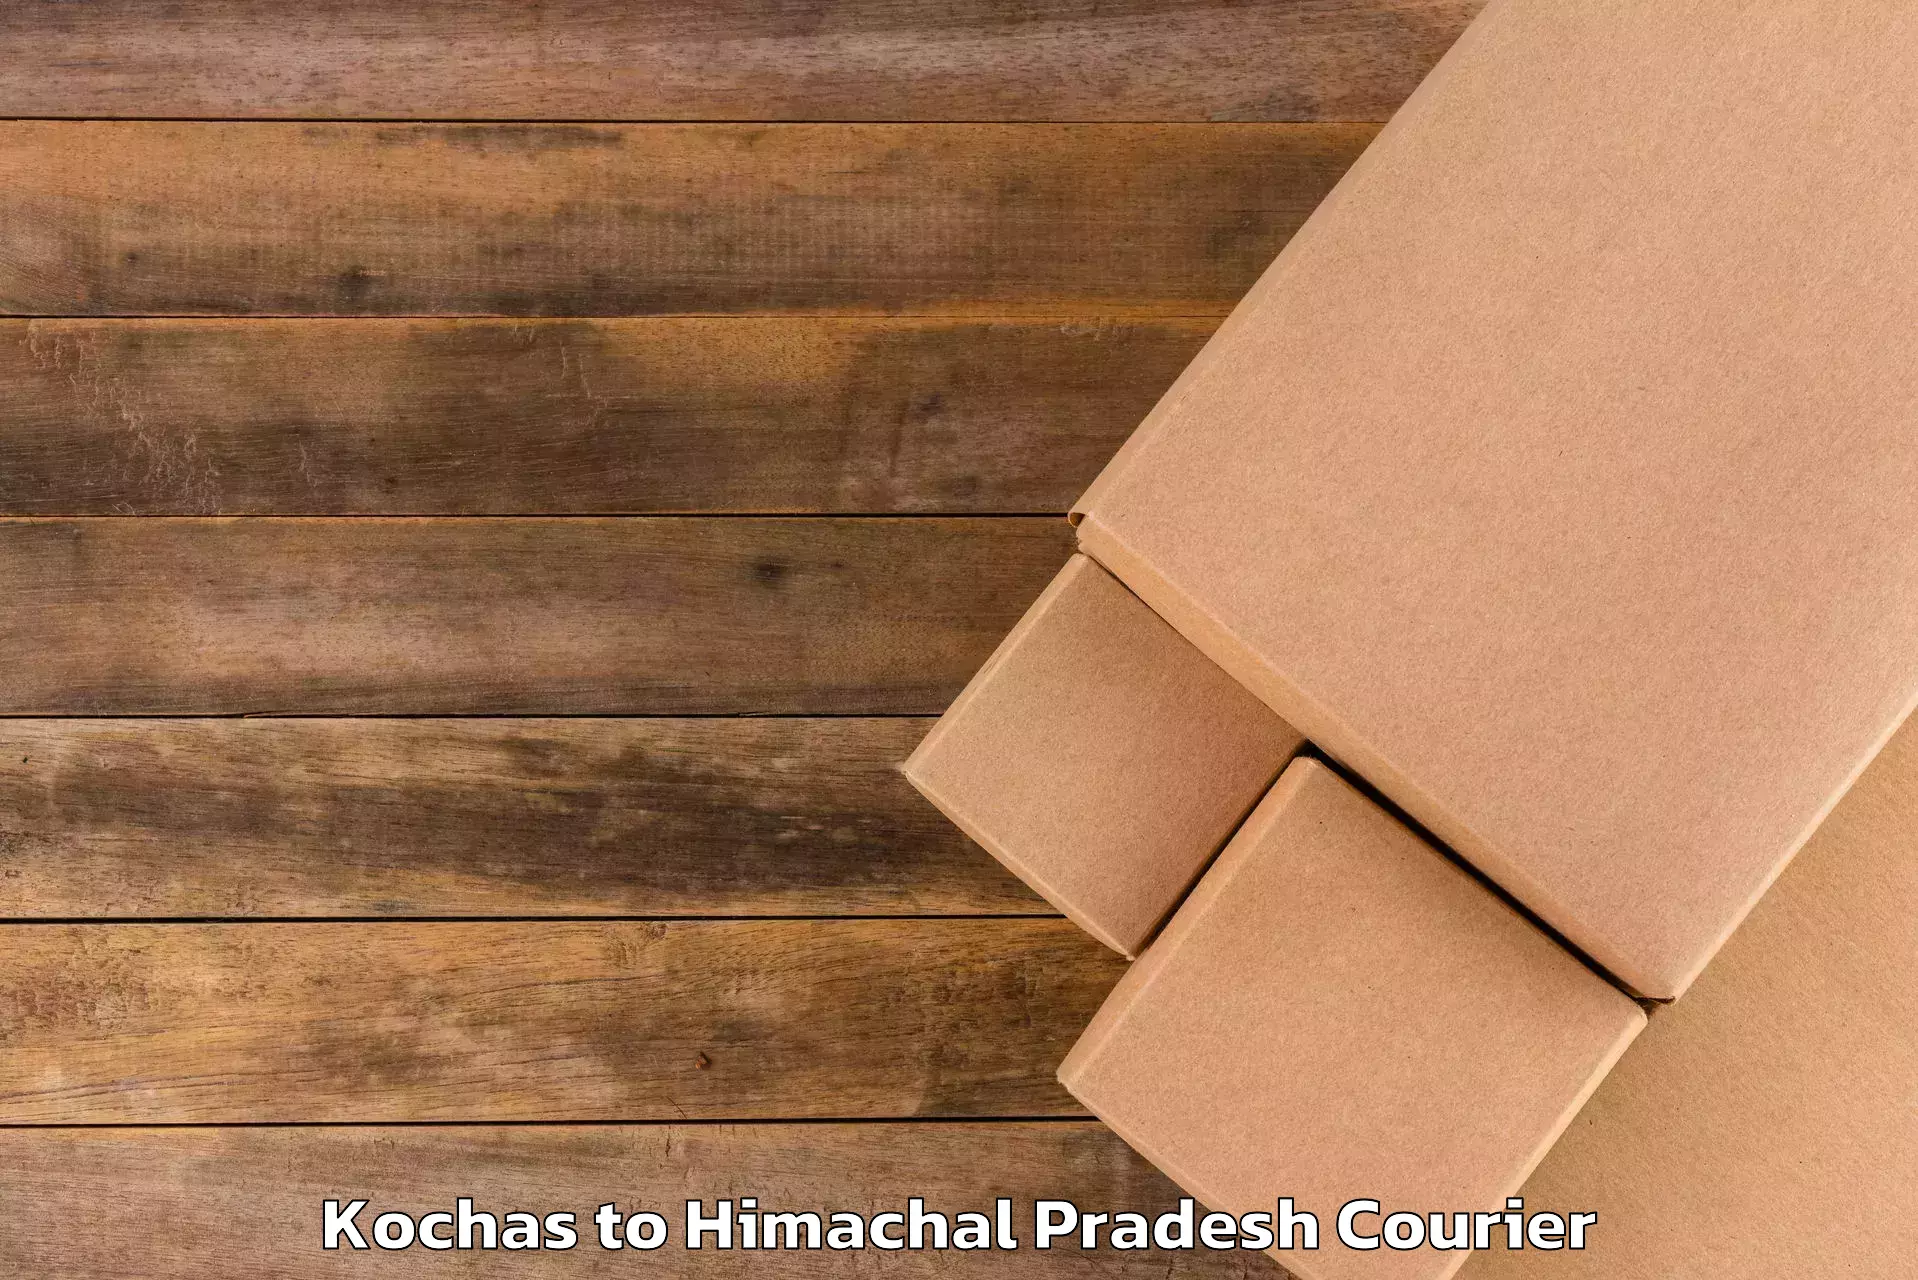 Luggage transit service Kochas to Himachal Pradesh